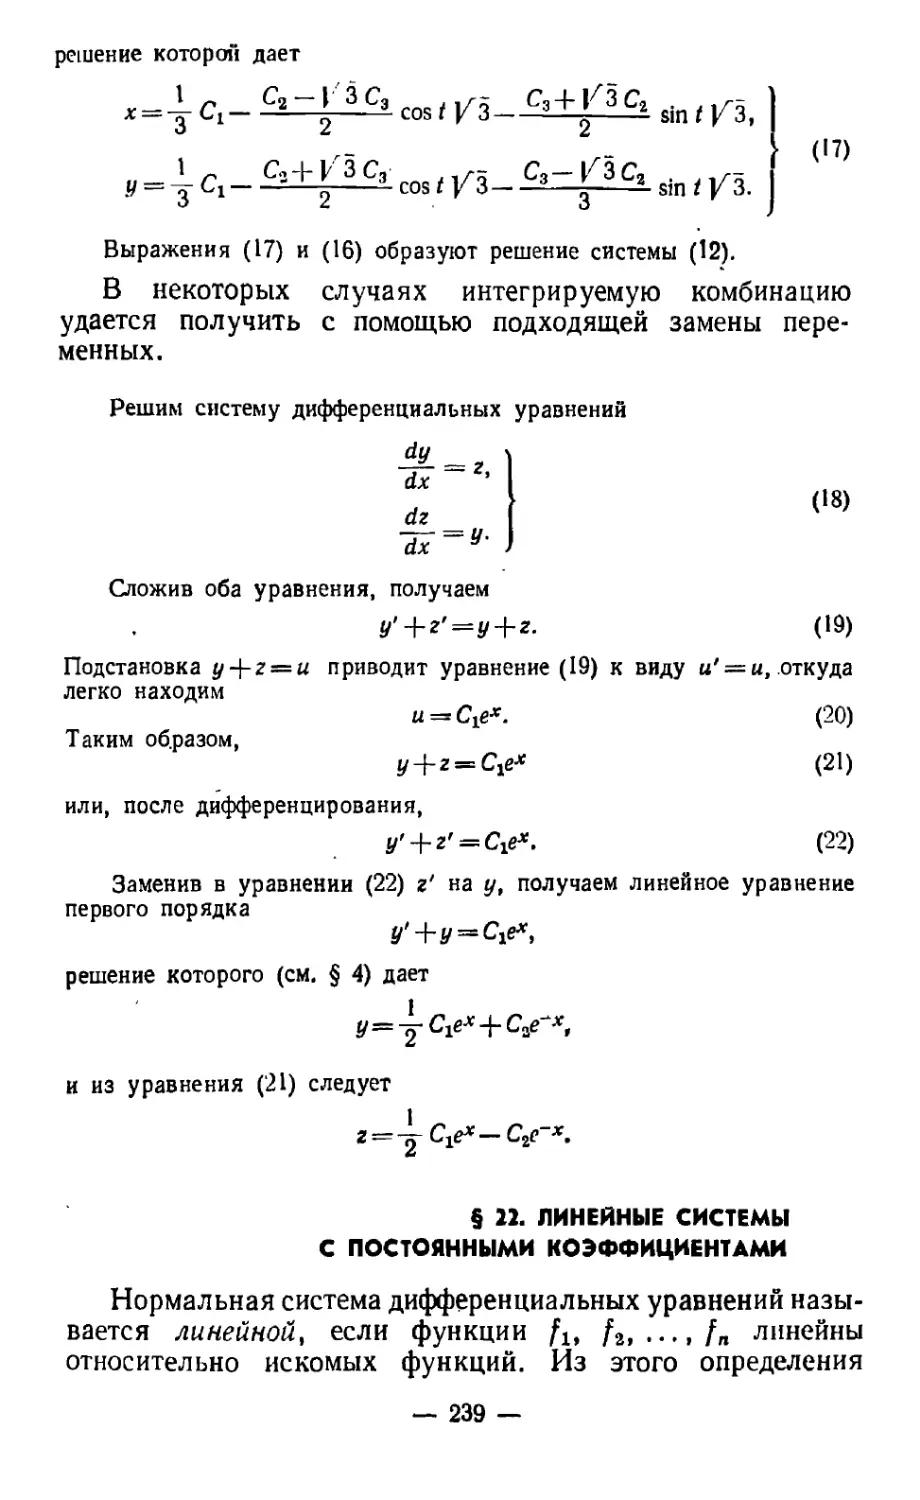 § 22. Линейные системы с постоянными коэффициентами